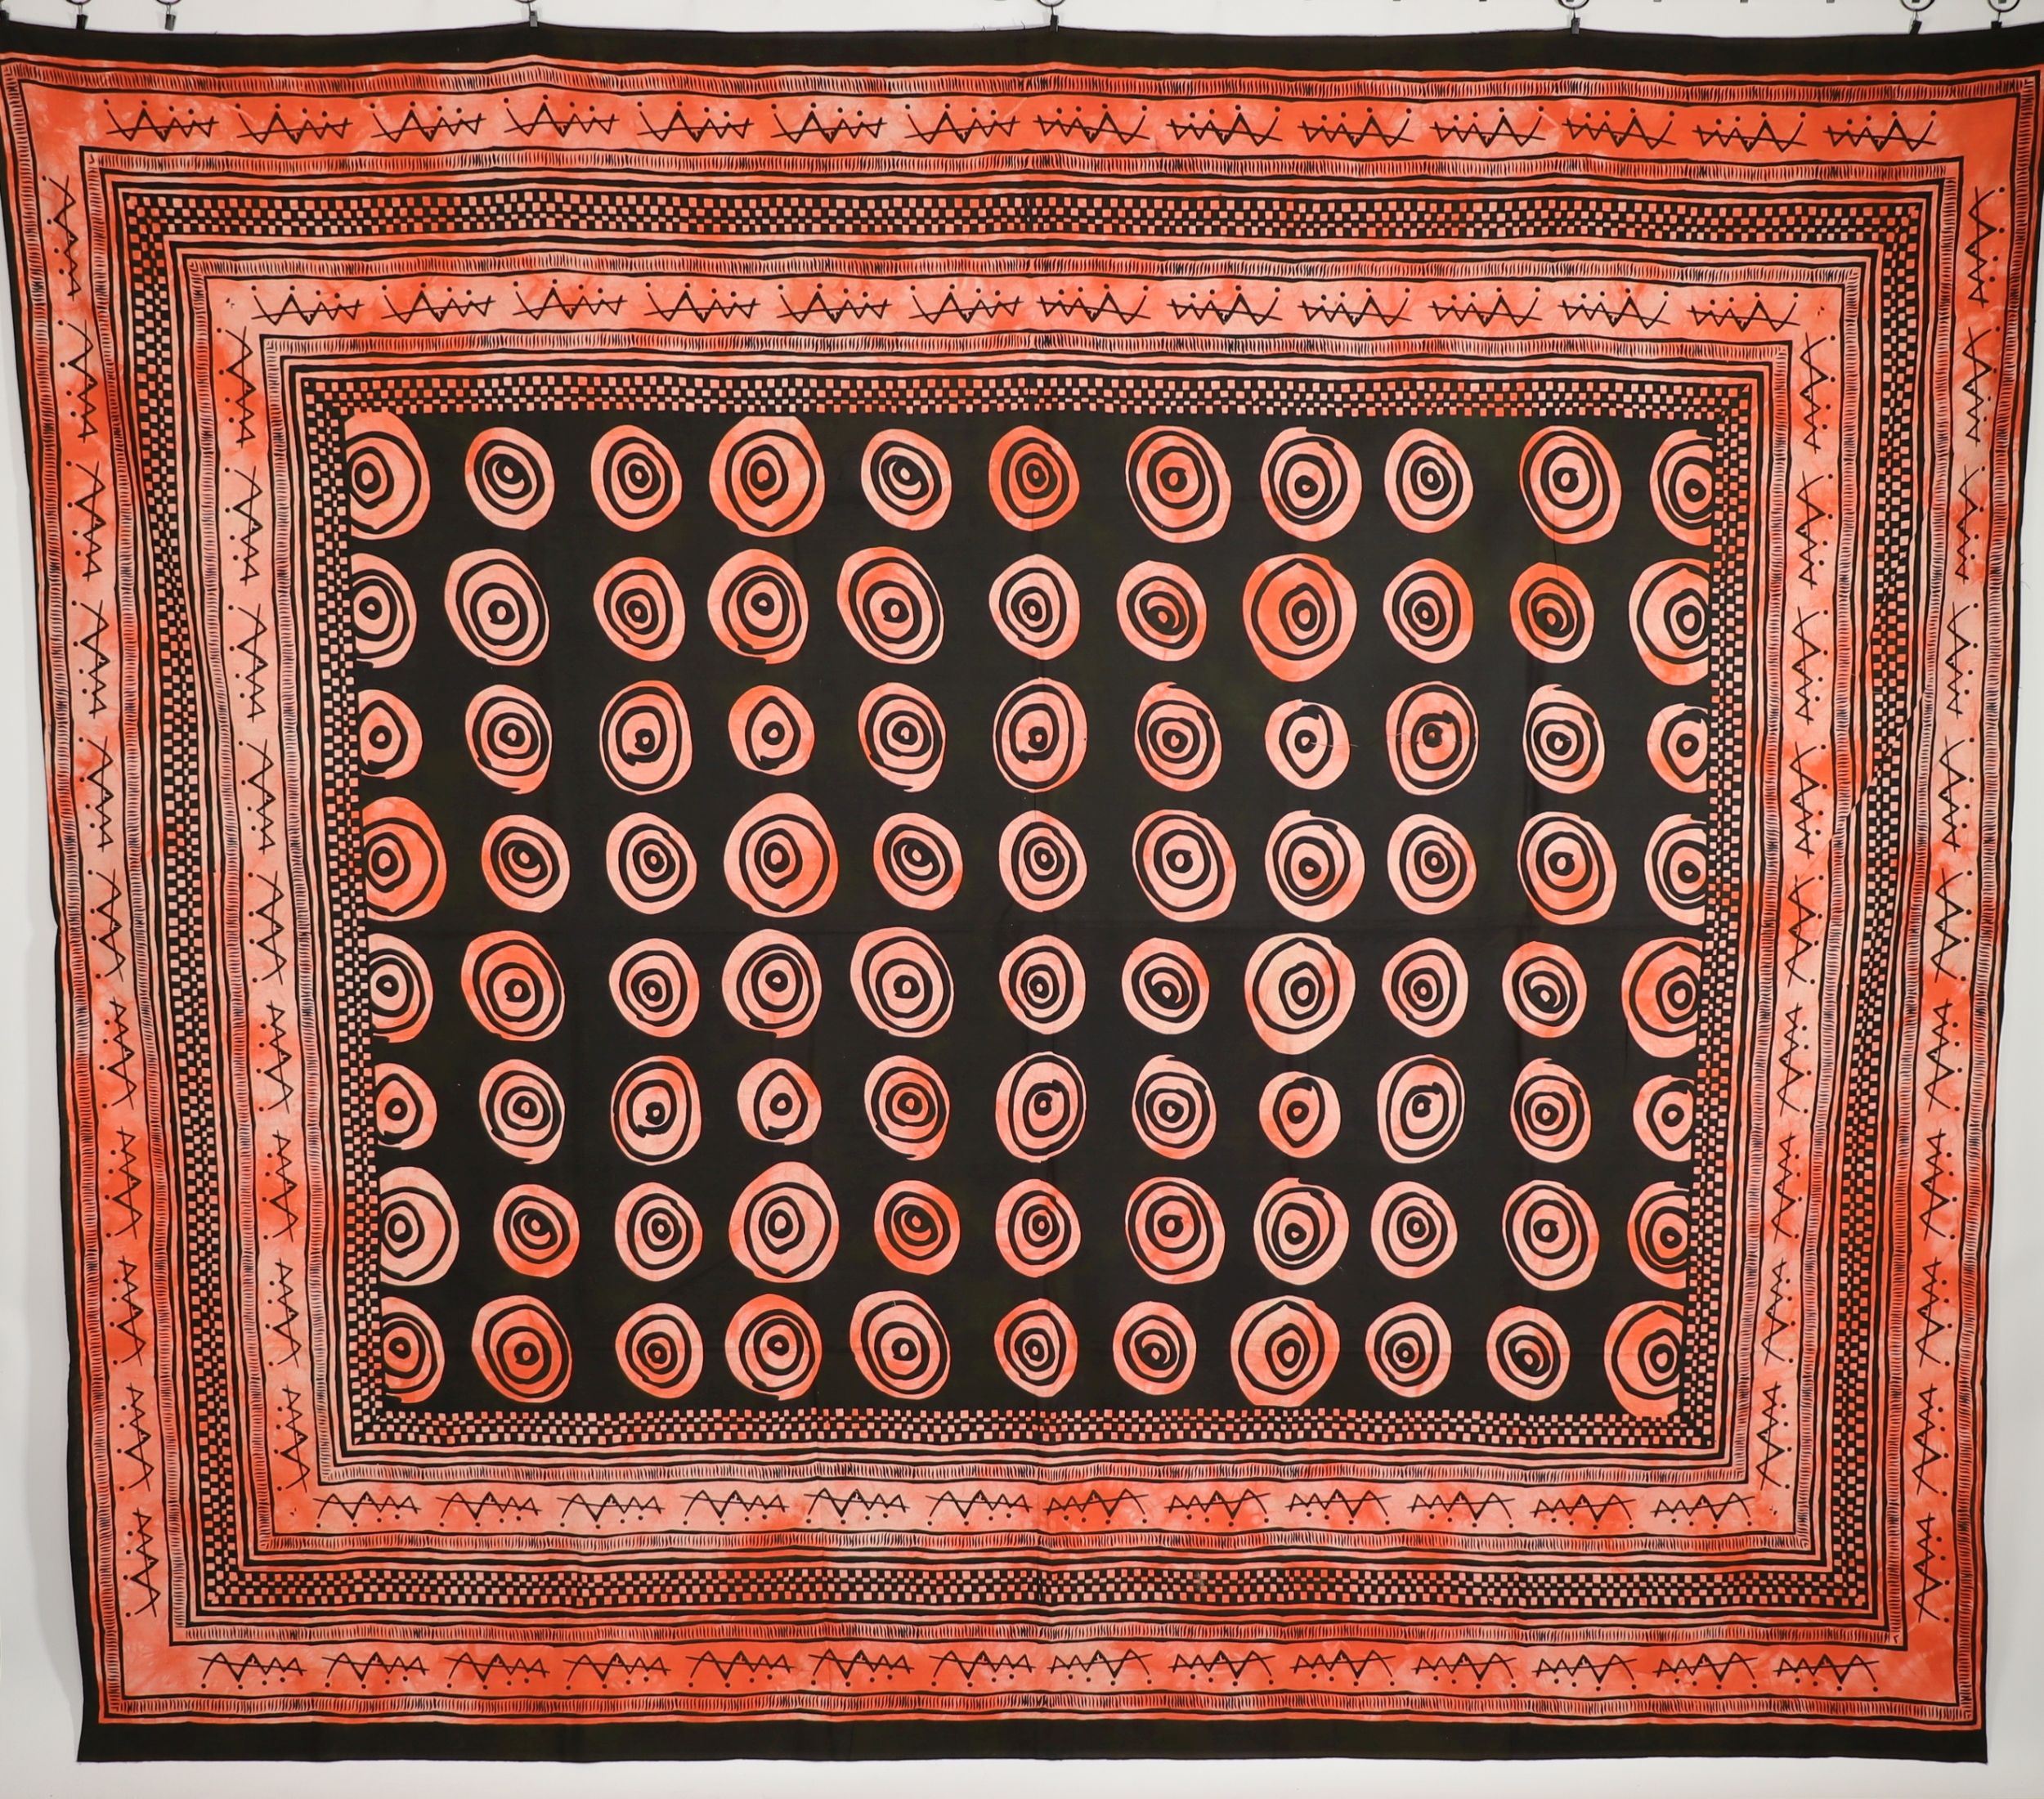 Wandtuch XXL 210x230 - Kreise und Punkte - 100% Baumwolle - detailreicher indischer Druck - mehrfarbig Batik - dekoratives Tuch, Wandbild, Tagesdecke, Bedcover, Vorhang, Picknick-Decke, Strandtuch